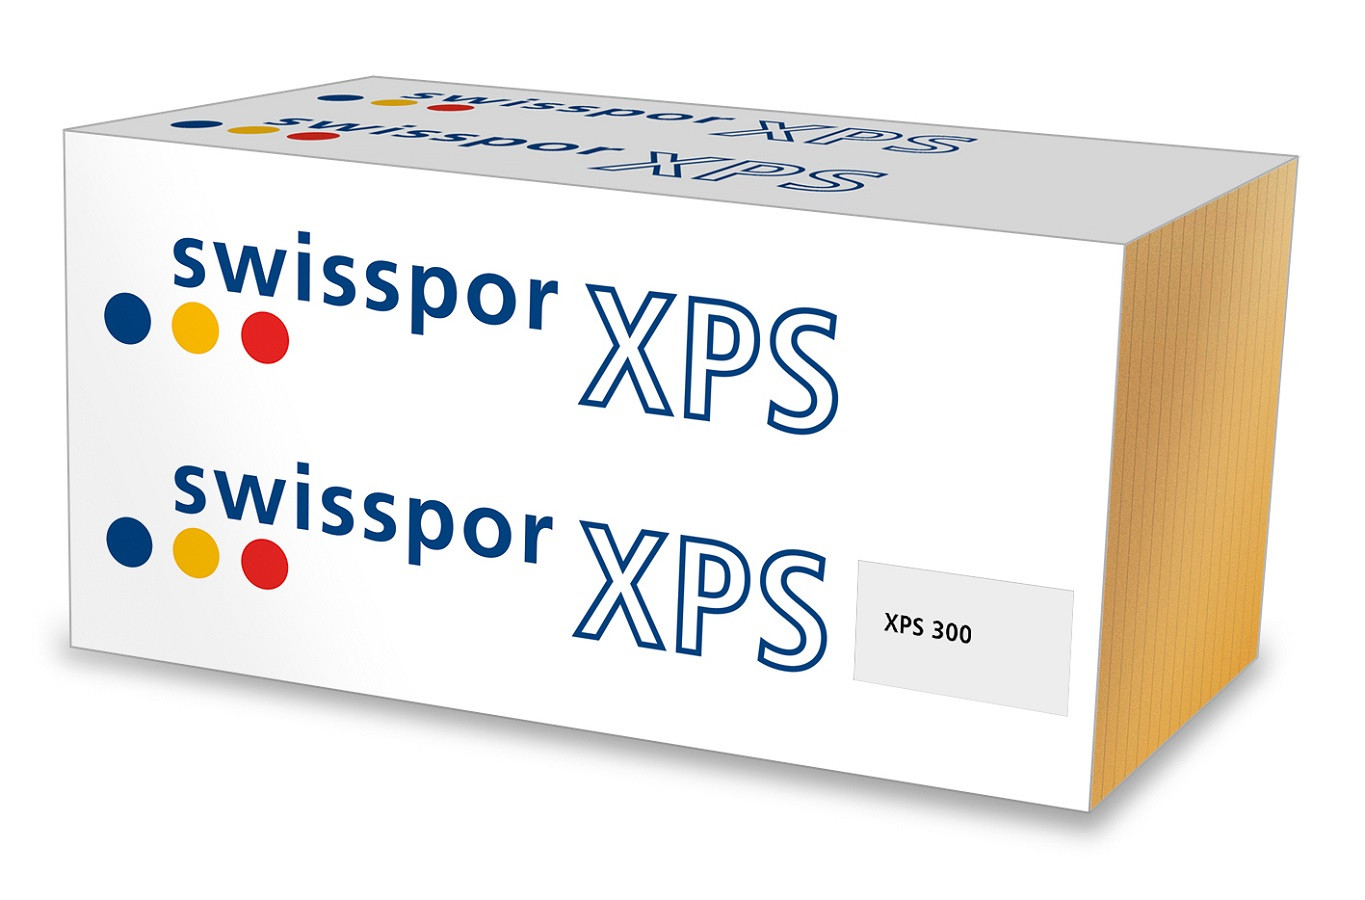 Swisspor XPS 300 L / grubość 4cm / λ 0,033 / płyta gładka / krawędzie frezowane L